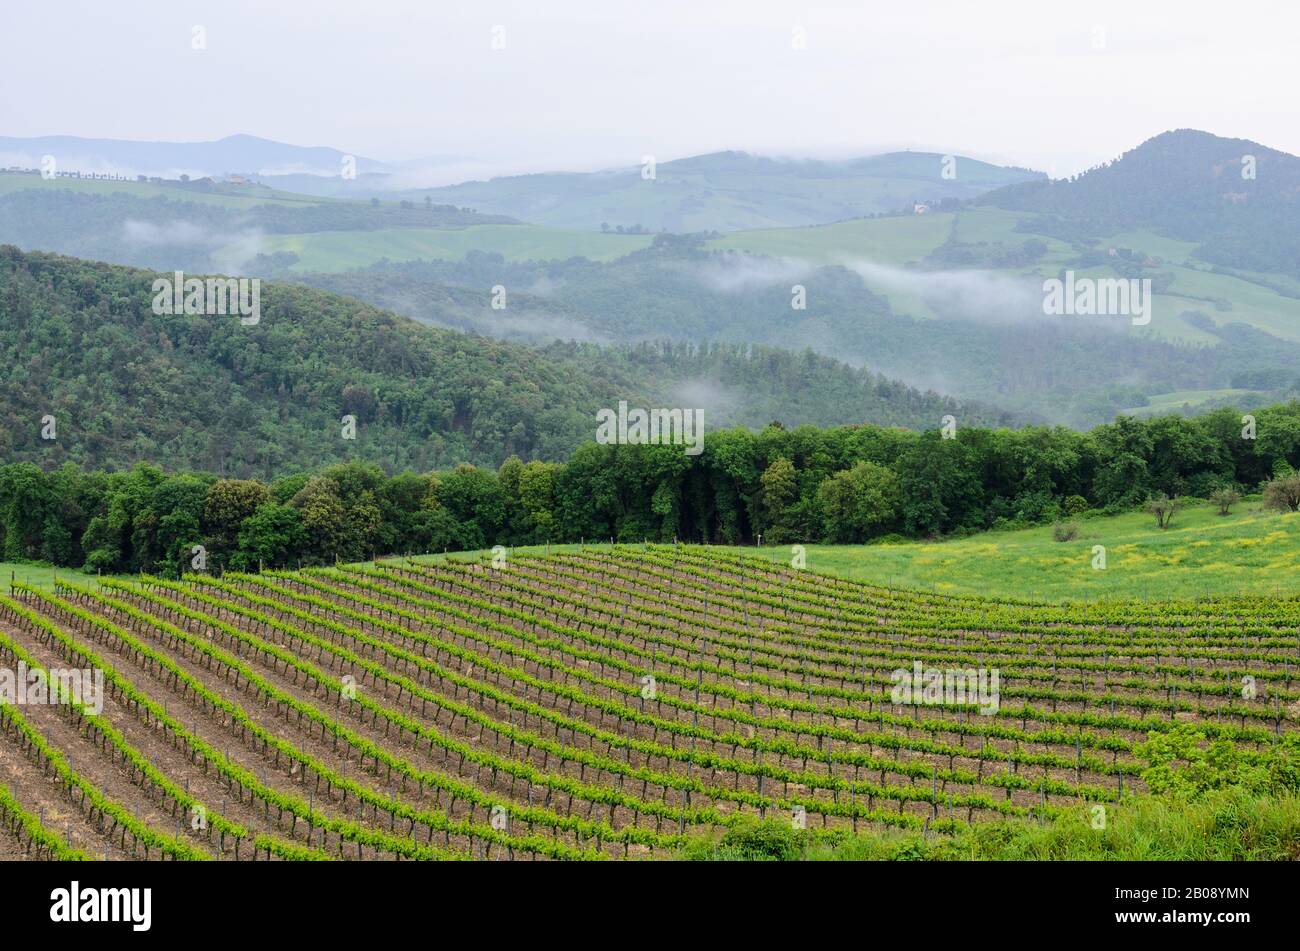 Les collines vallonnées de Toscane, Italie avec un vignoble en premier plan et des montagnes bordées d'arbres au loin. Banque D'Images